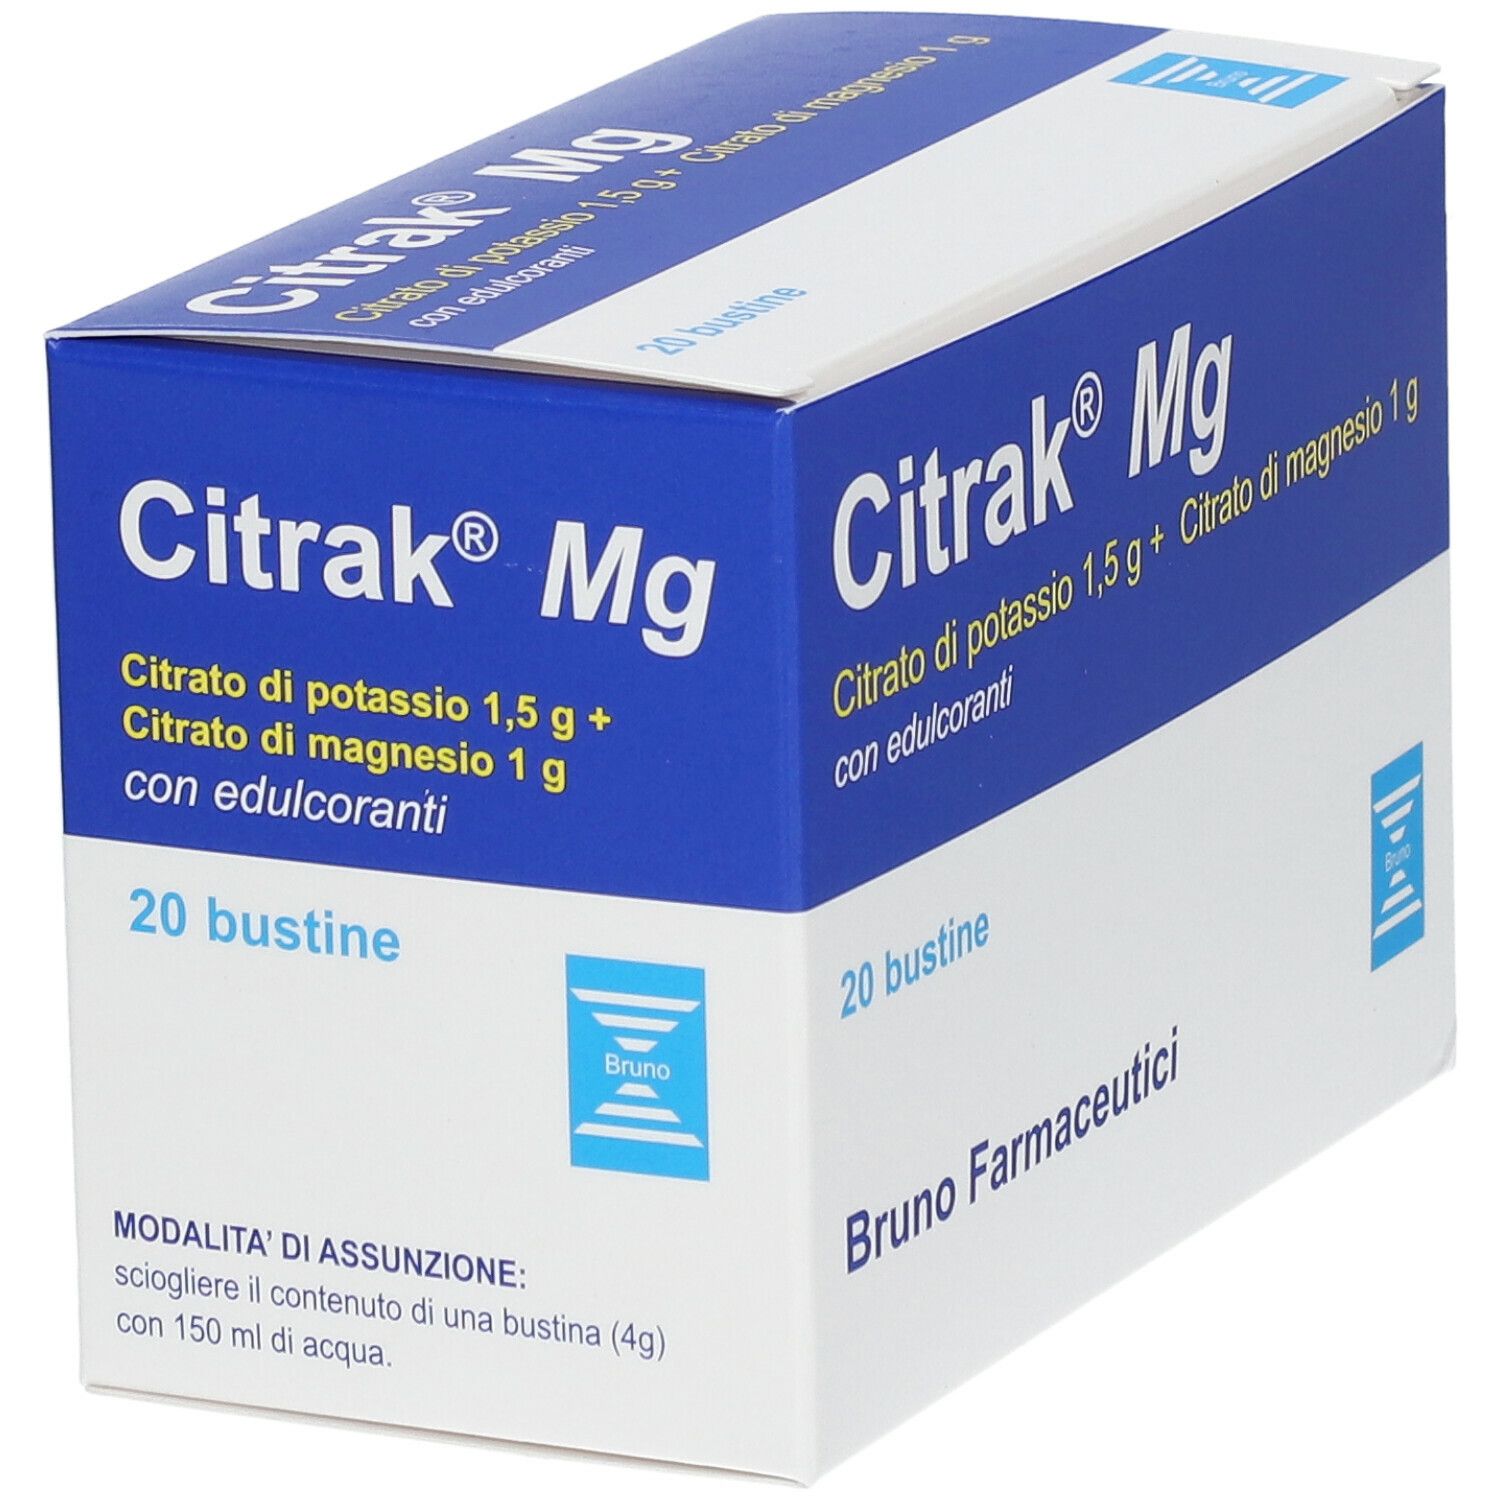 Citrak® Mg